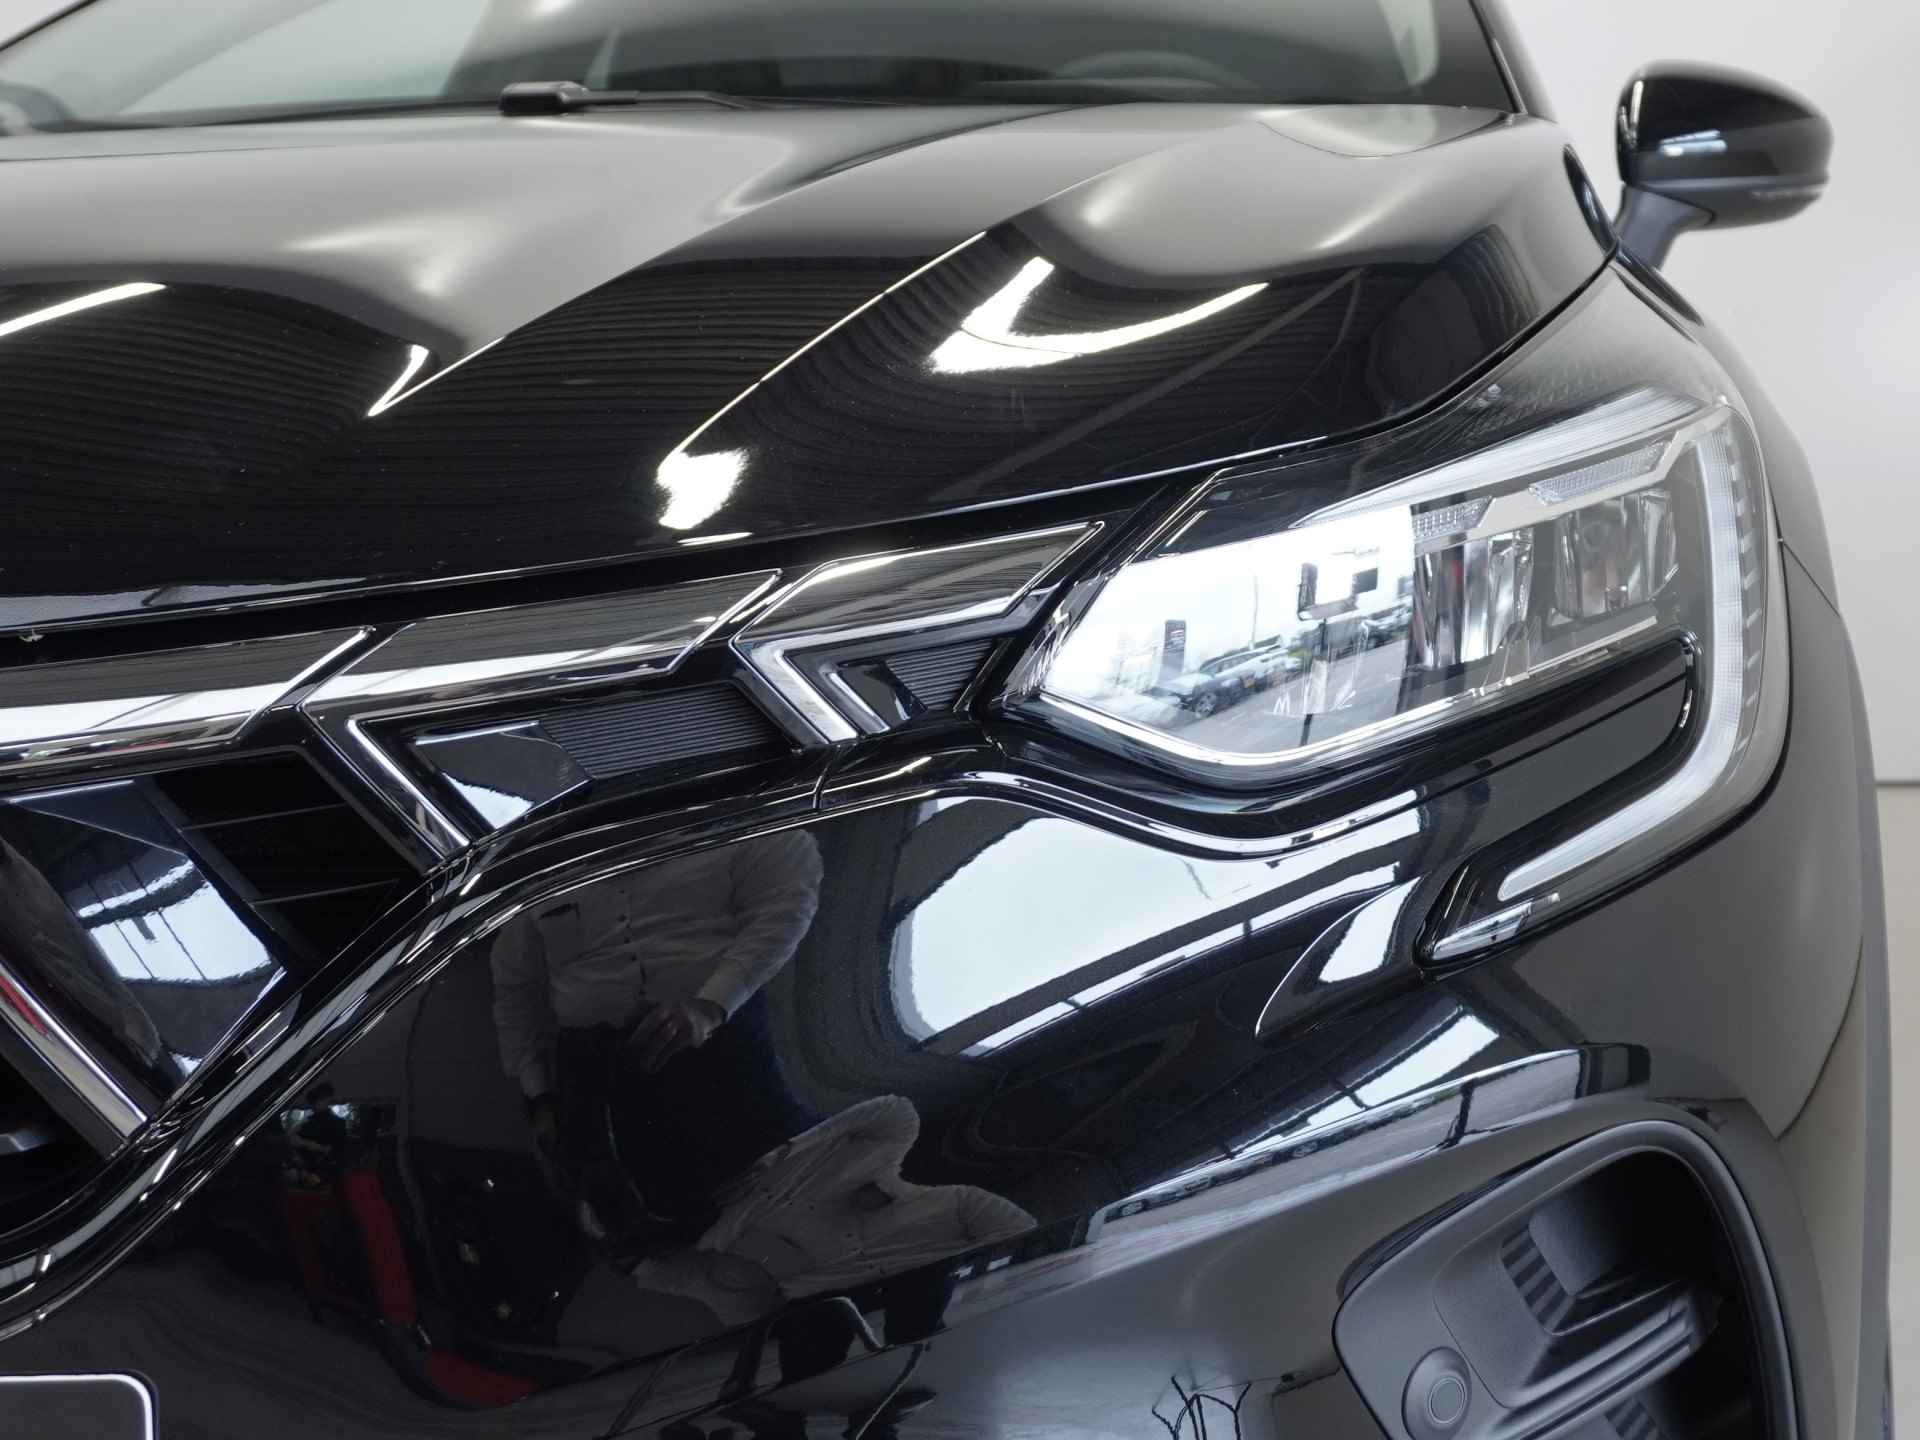 Mitsubishi ASX 1.0 MPI Turbo Intense | Registratiebonus €3.000,-! | Nu geheel rijklaar van €31.720,- voor €28.720,- incl. 8 jaar garantie - 8/40